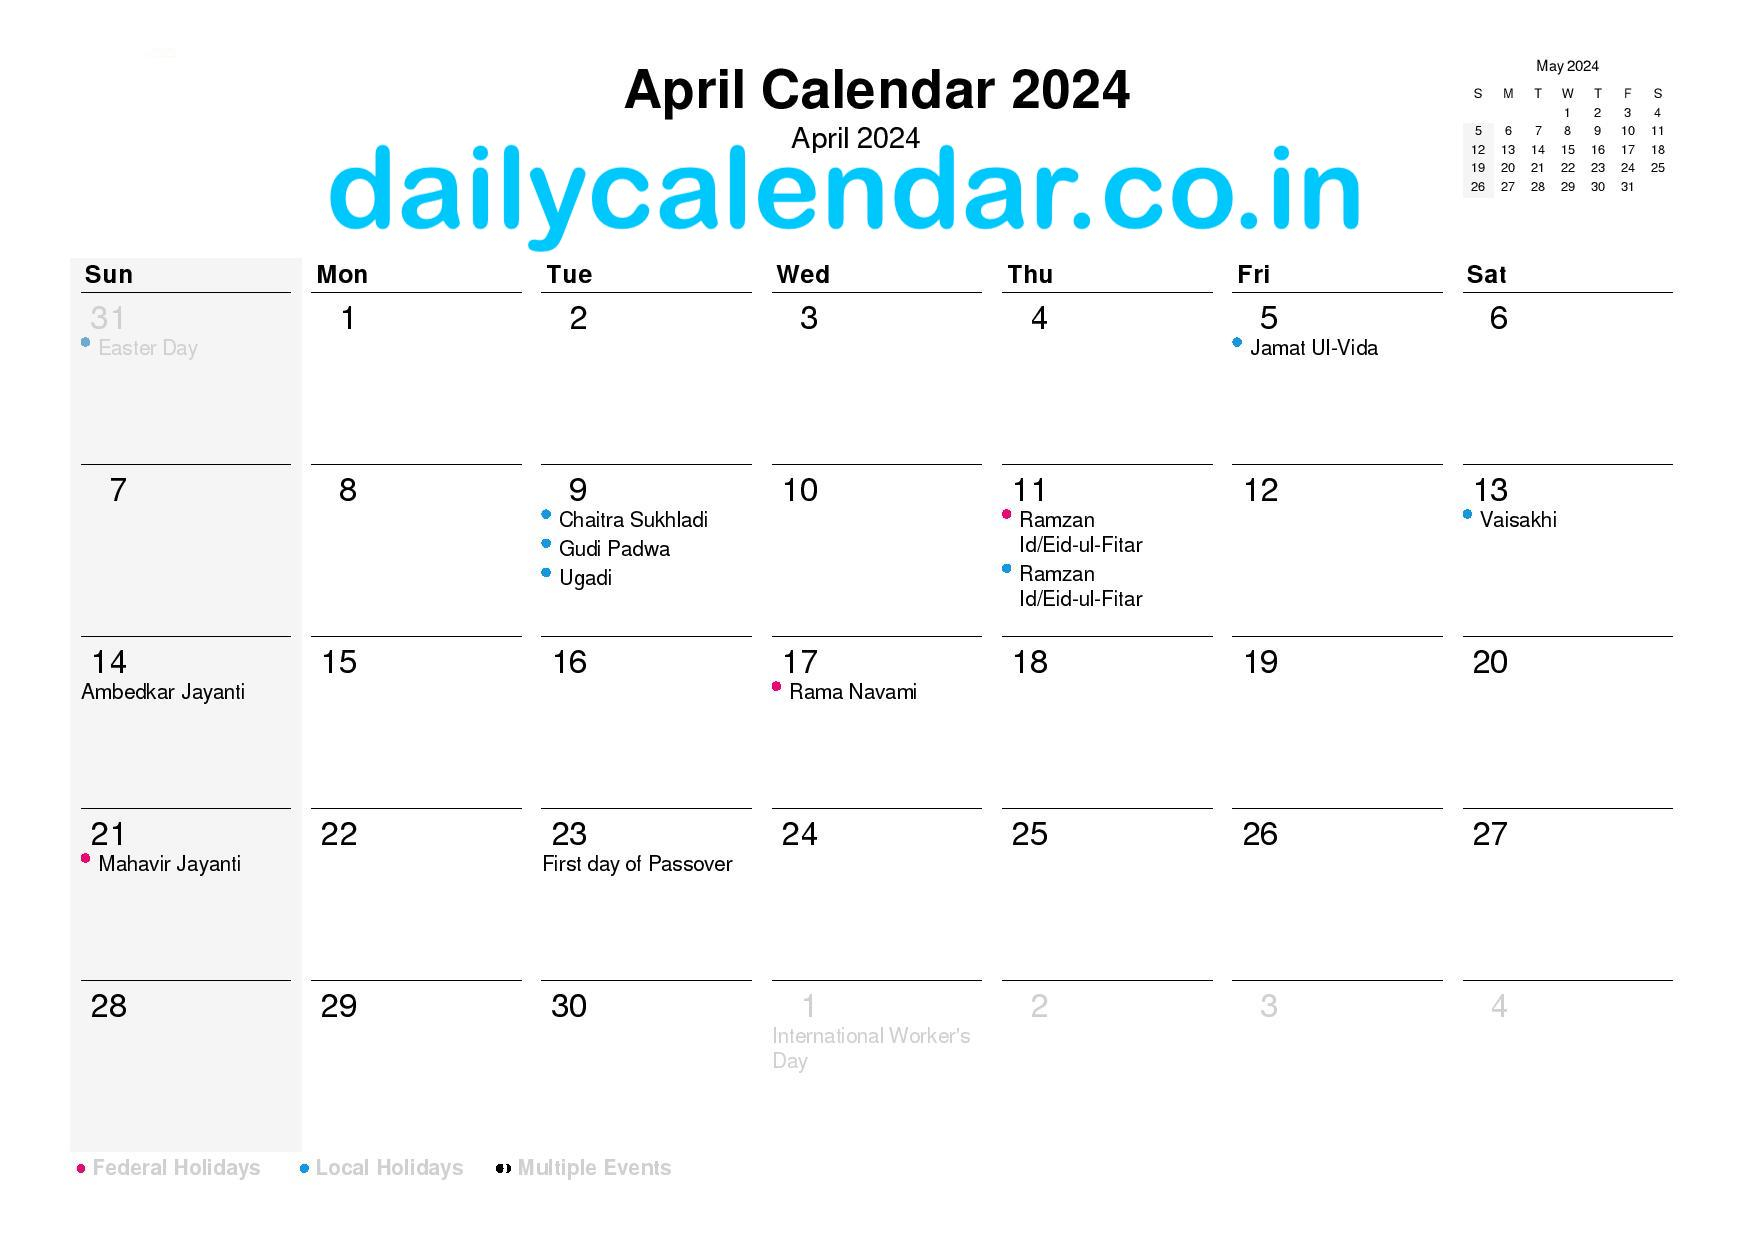 April 2024 Calendar With Holidays India [Hindu Calendar] Pdf regarding Hindu Calendar April 2024